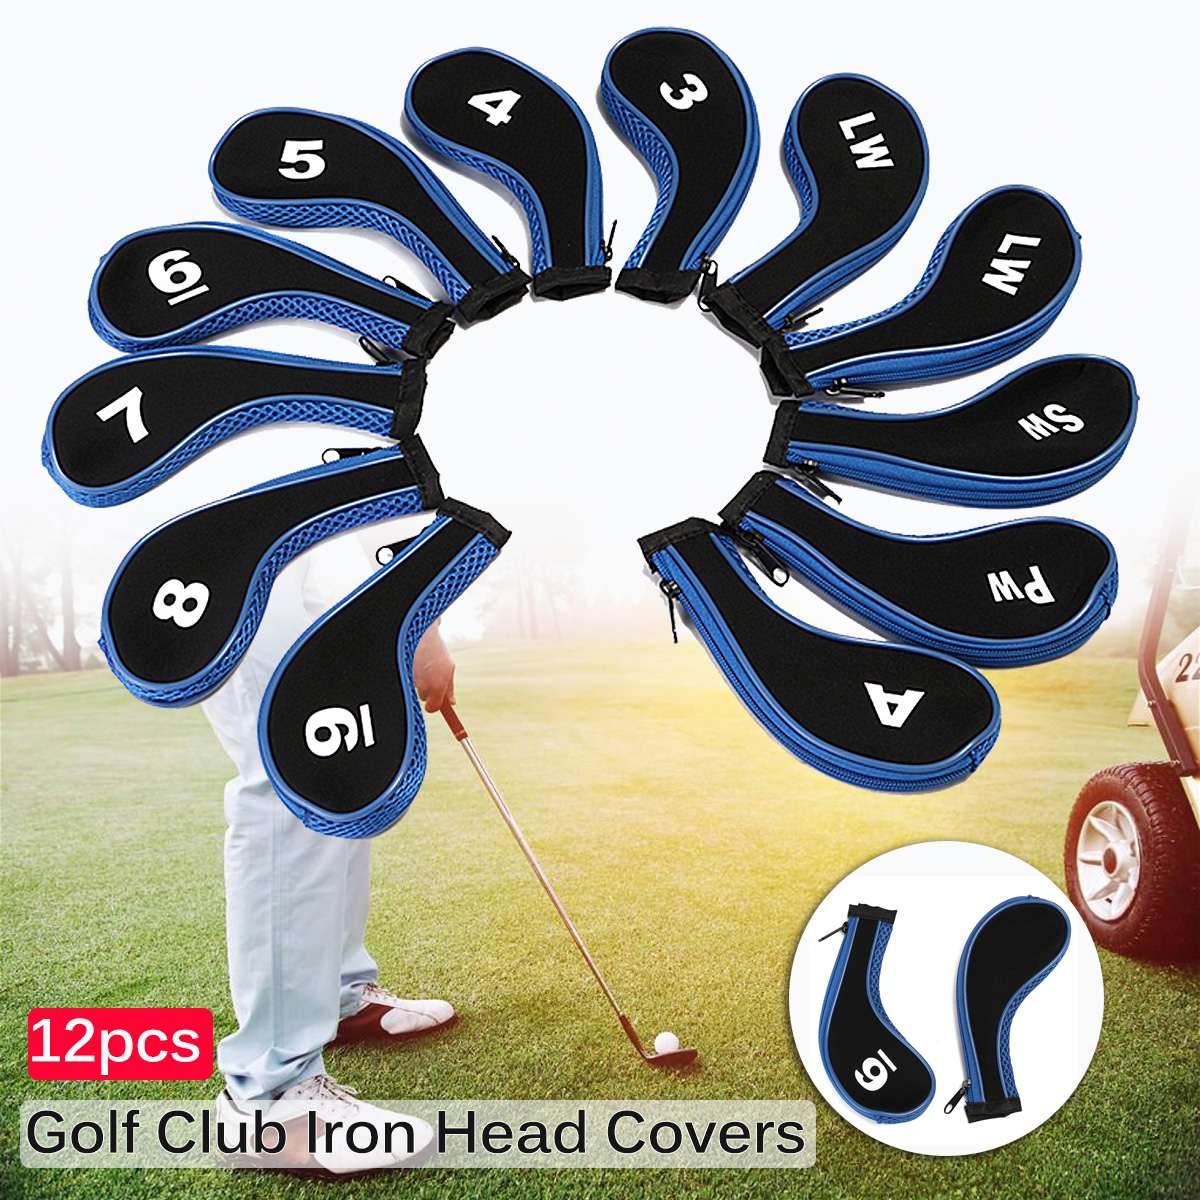 12 stk / sæt golfkøller jernhoveddæksler hovedbeklædning med lynlås lang hals 4 farver: Blå